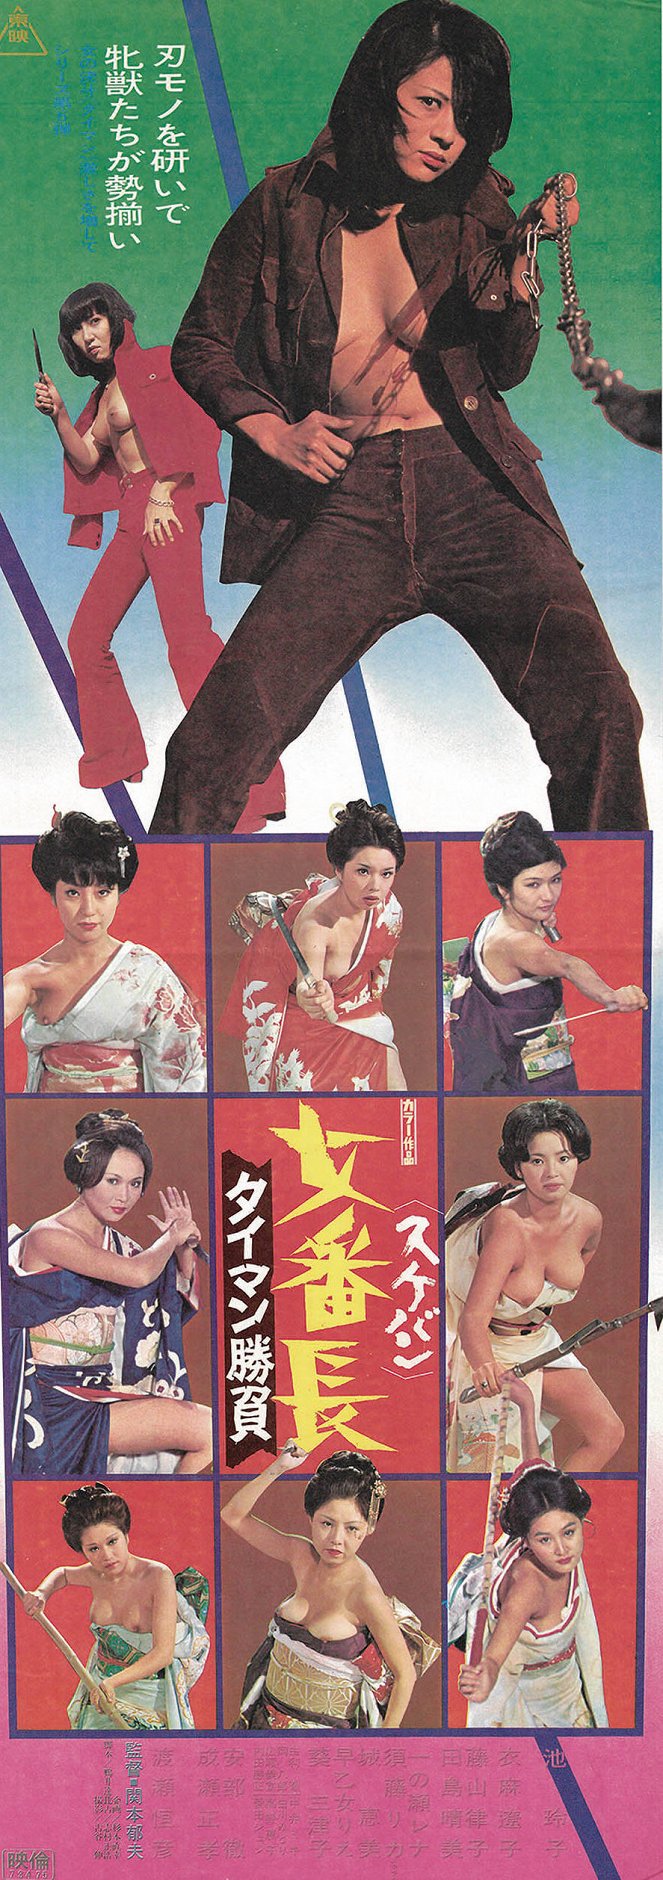 Sukeban: Taiman šóbu - Plakate